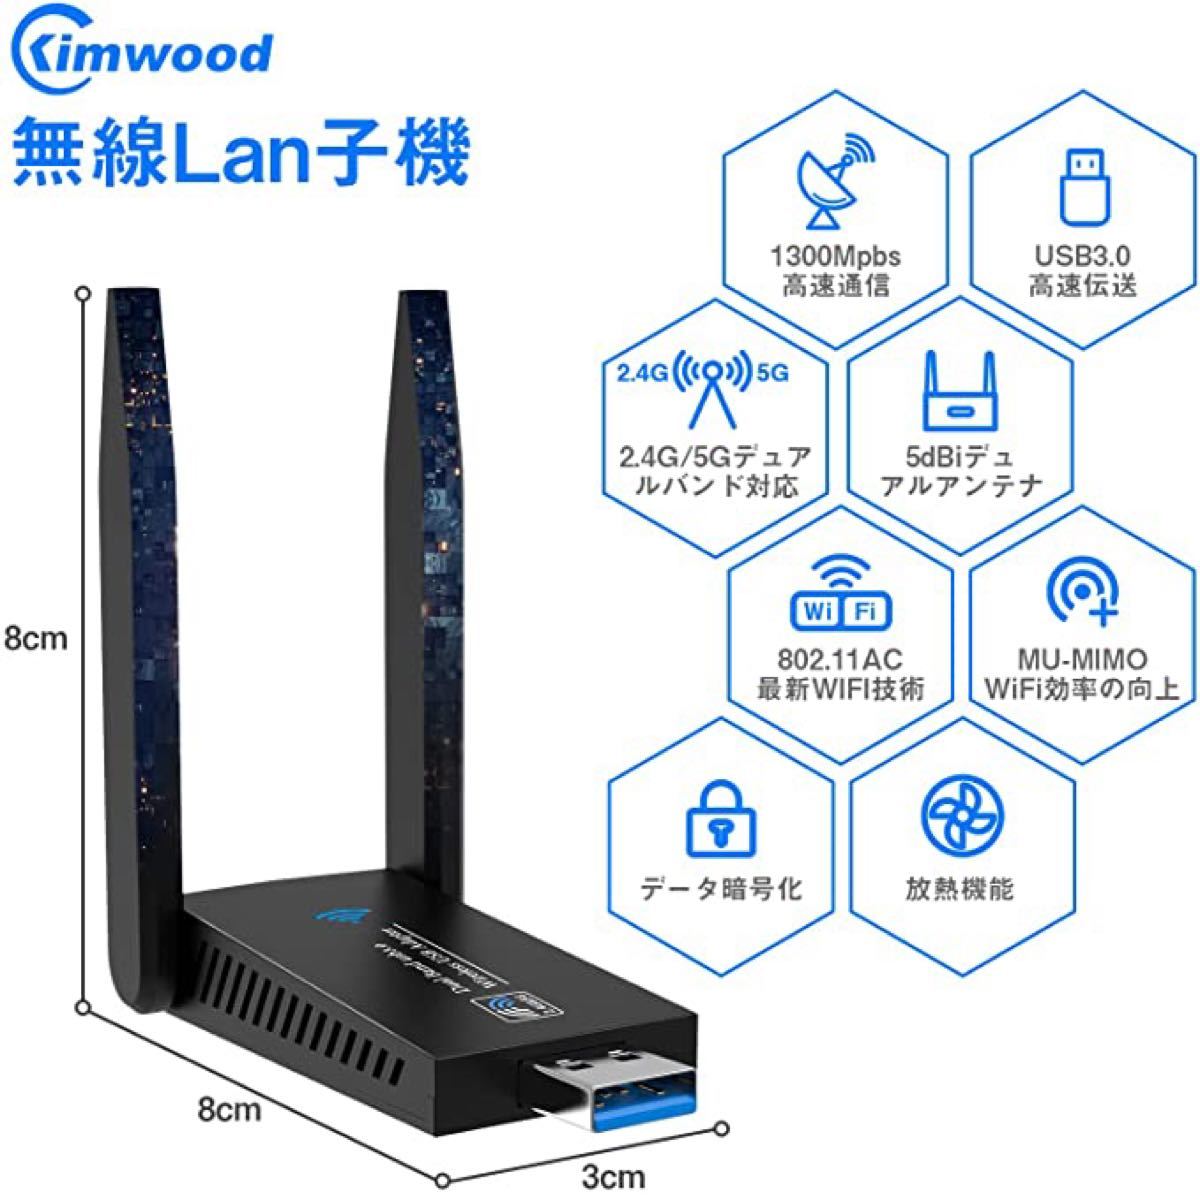 【新品】無線lan 子機 KIMWOOD wifi usb 1300Mbps